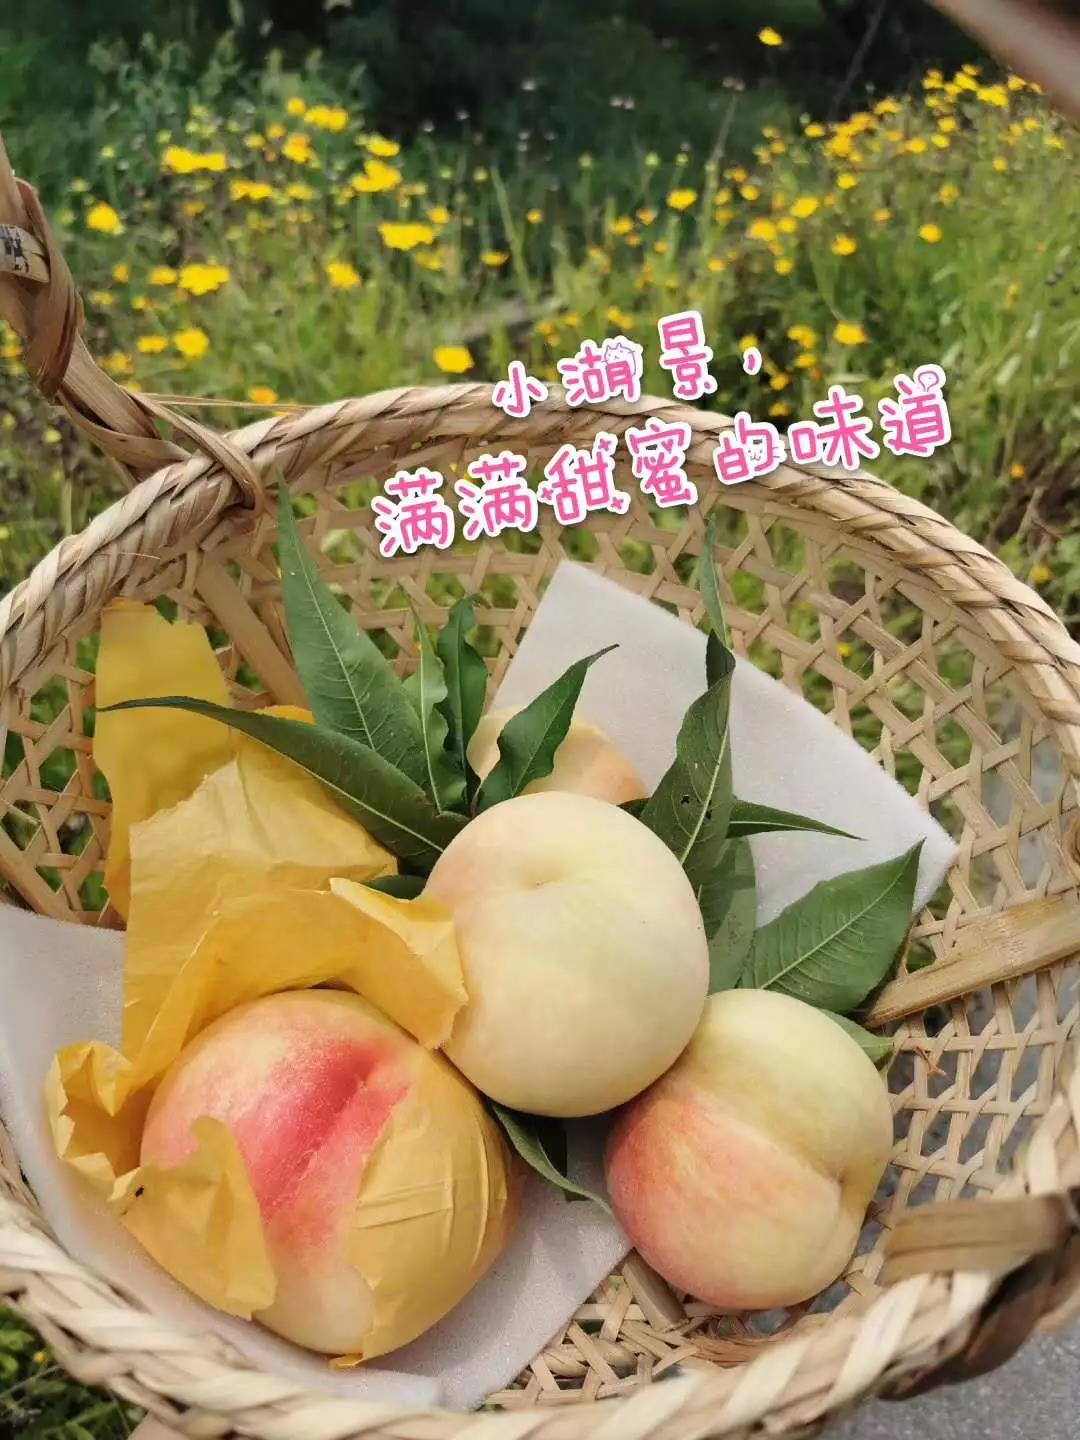 美汁源×王一博带你感受汁汁桃桃的甜美爆袭!